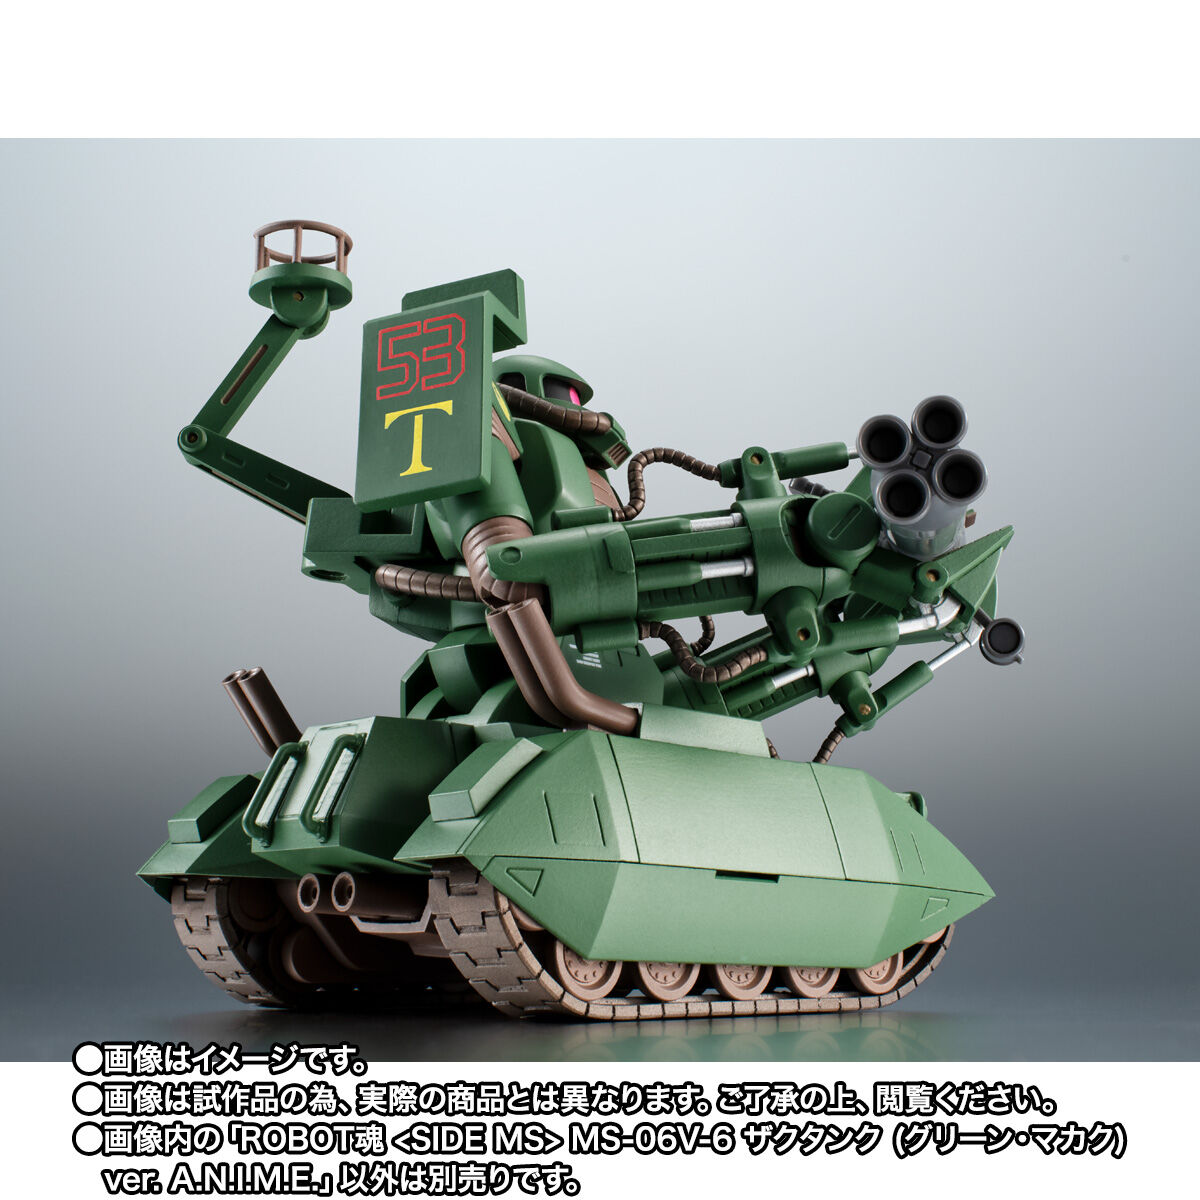 【限定販売】ROBOT魂〈SIDE MS〉『MS-06V-6 ザクタンク（グリーン・マカク）ver. A.N.I.M.E.』機動戦士ガンダム MSV 可動フィギュア-008